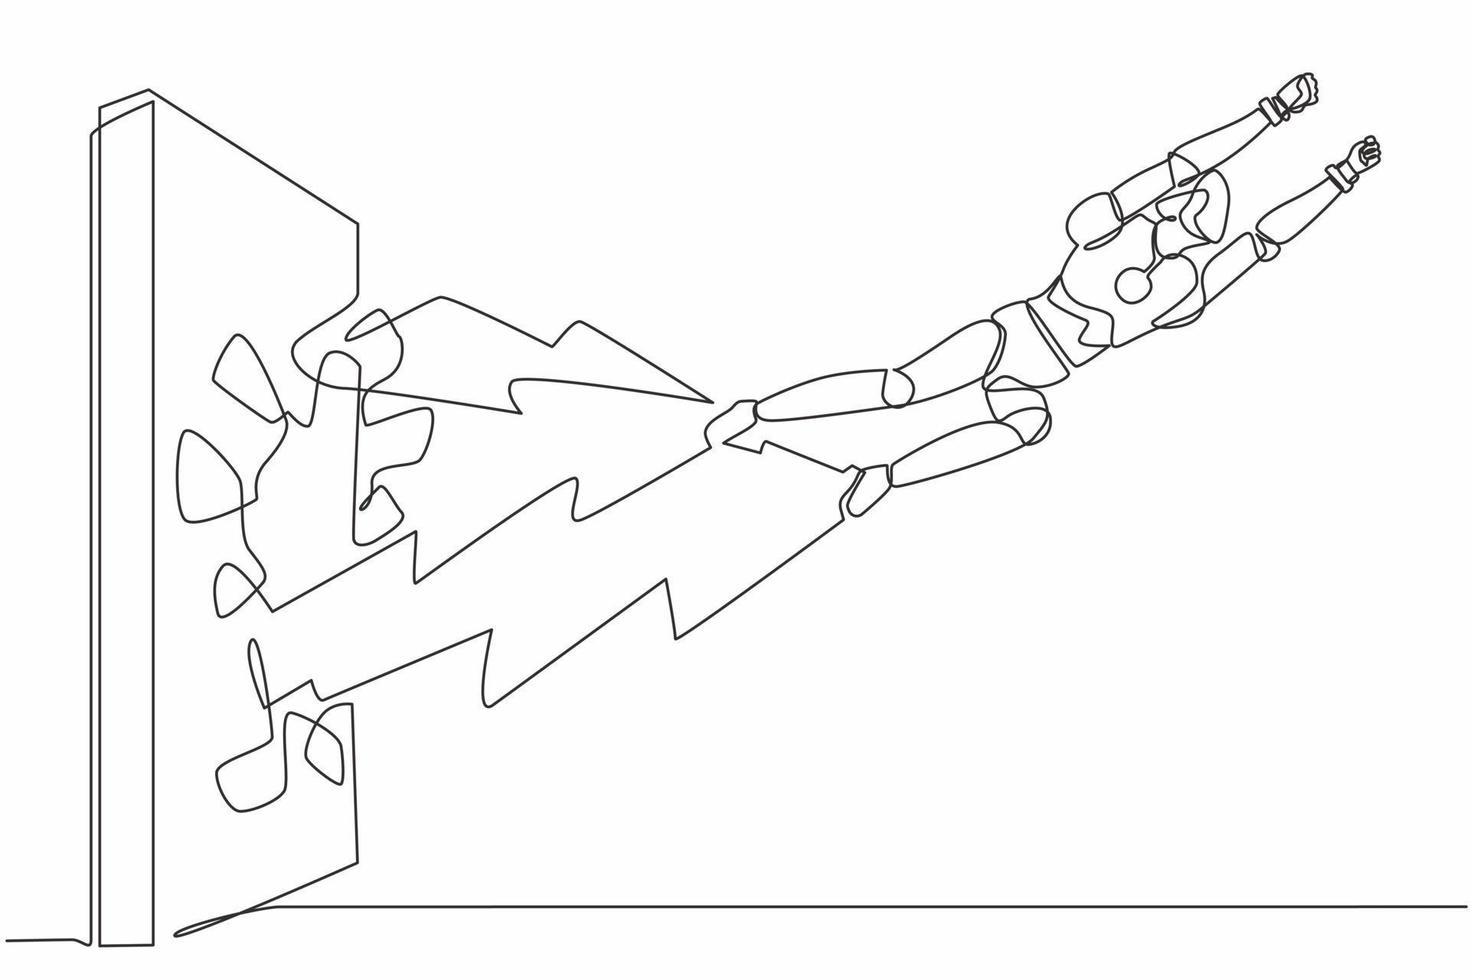 robô de desenho contínuo de uma linha perfura e quebra a parede. robô voador quebra a parede. organismo cibernético robô humanóide. futuro robótico. ilustração gráfica de vetor de desenho de linha única